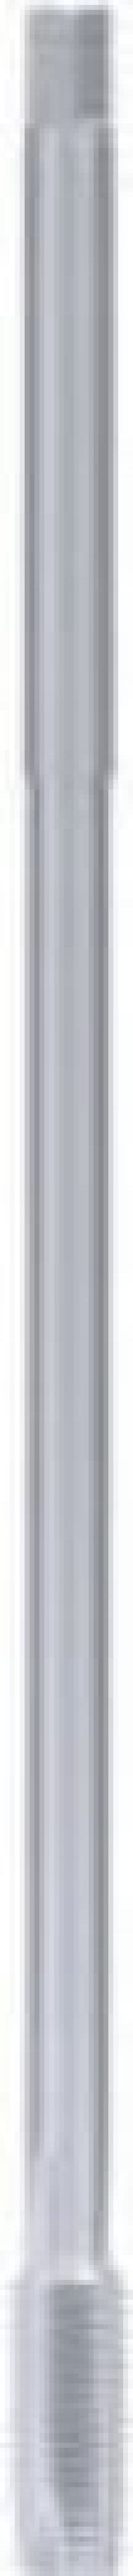 Fanar Gwintownik maszynowy M8 przedłużany (D2-111121-0080) 1